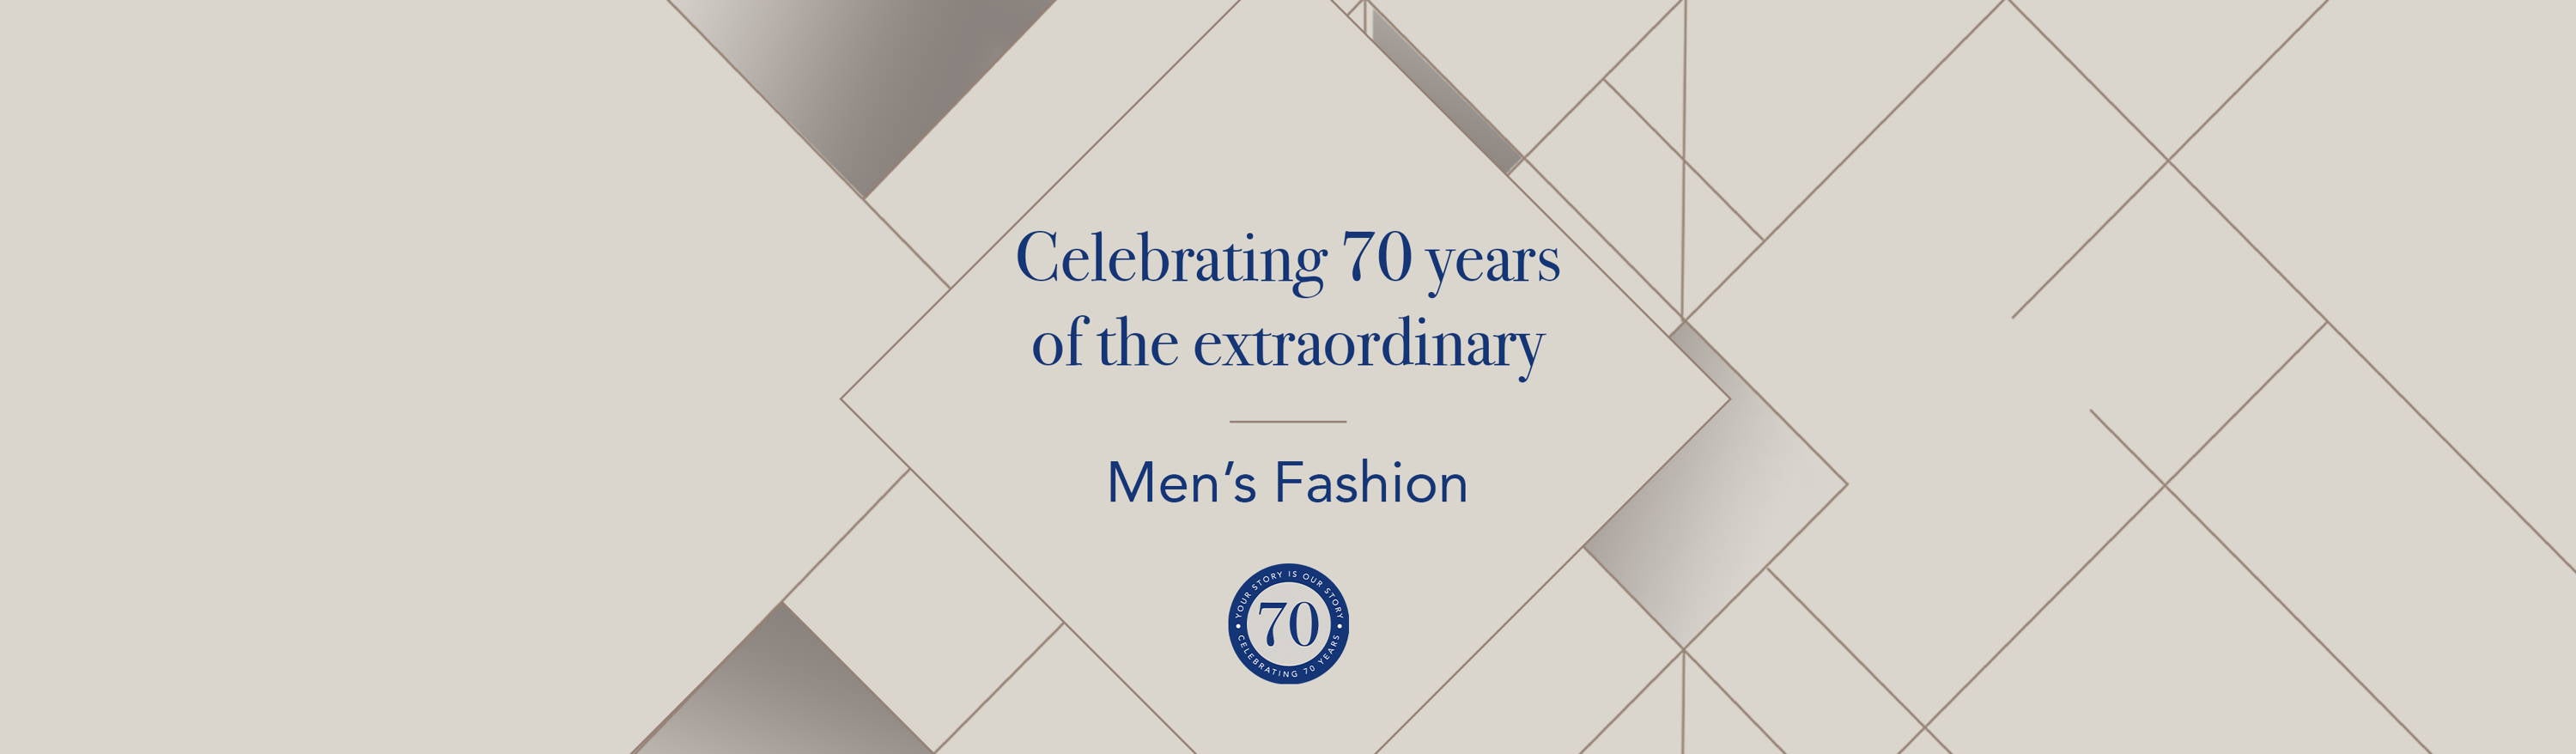 Rustan's 70th Anniversary Offers: Men's Fashion